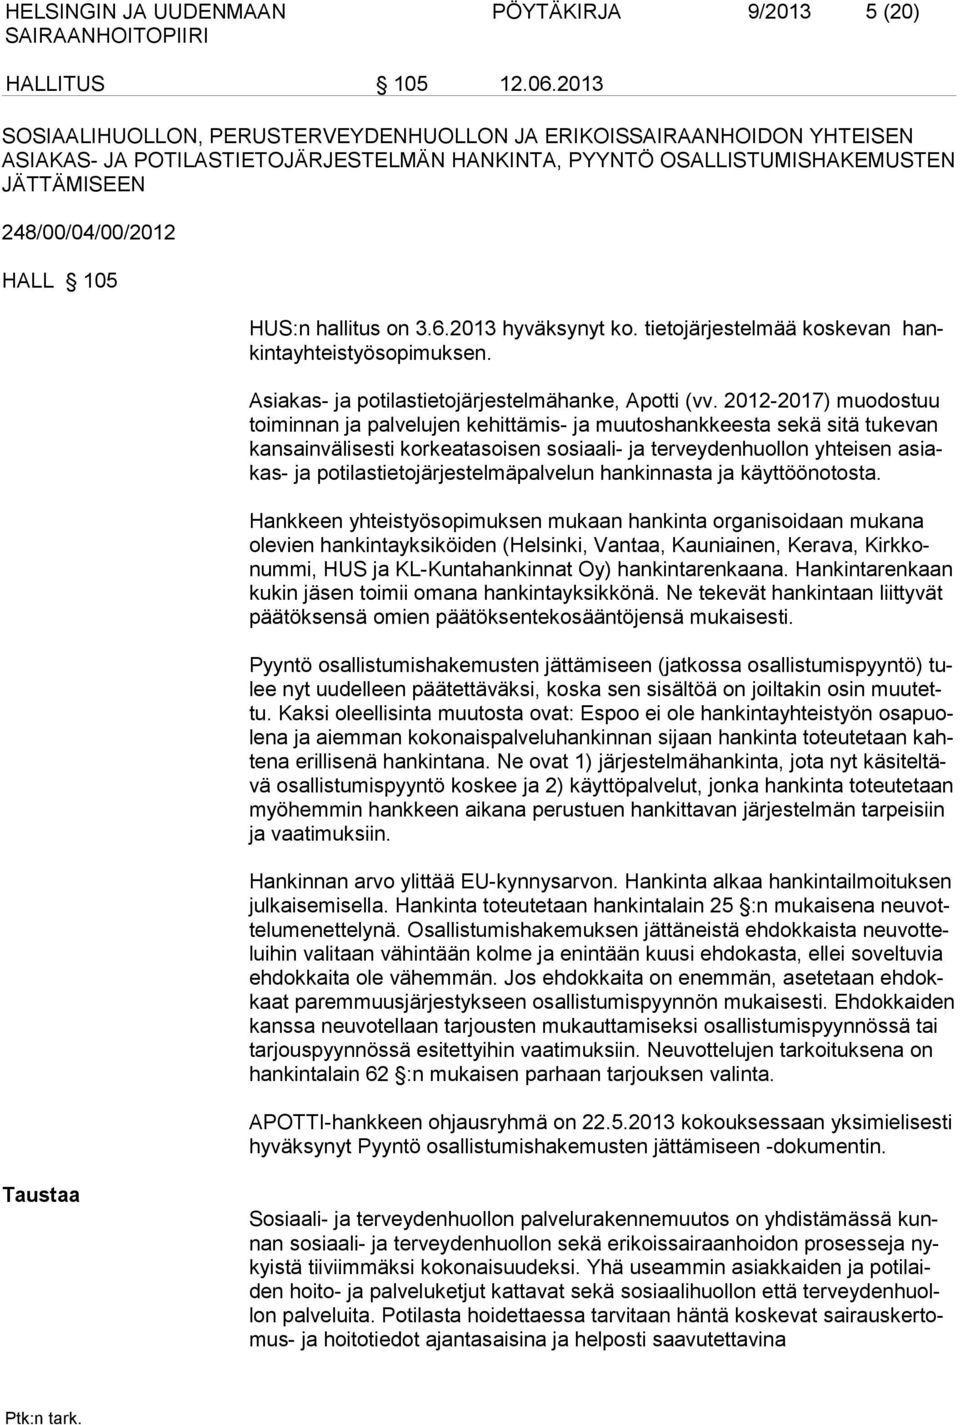 hallitus on 3.6.2013 hyväksynyt ko. tietojärjestelmää koskevan hankintayhteistyösopimuksen. Asiakas- ja potilastietojärjestelmähanke, Apotti (vv.